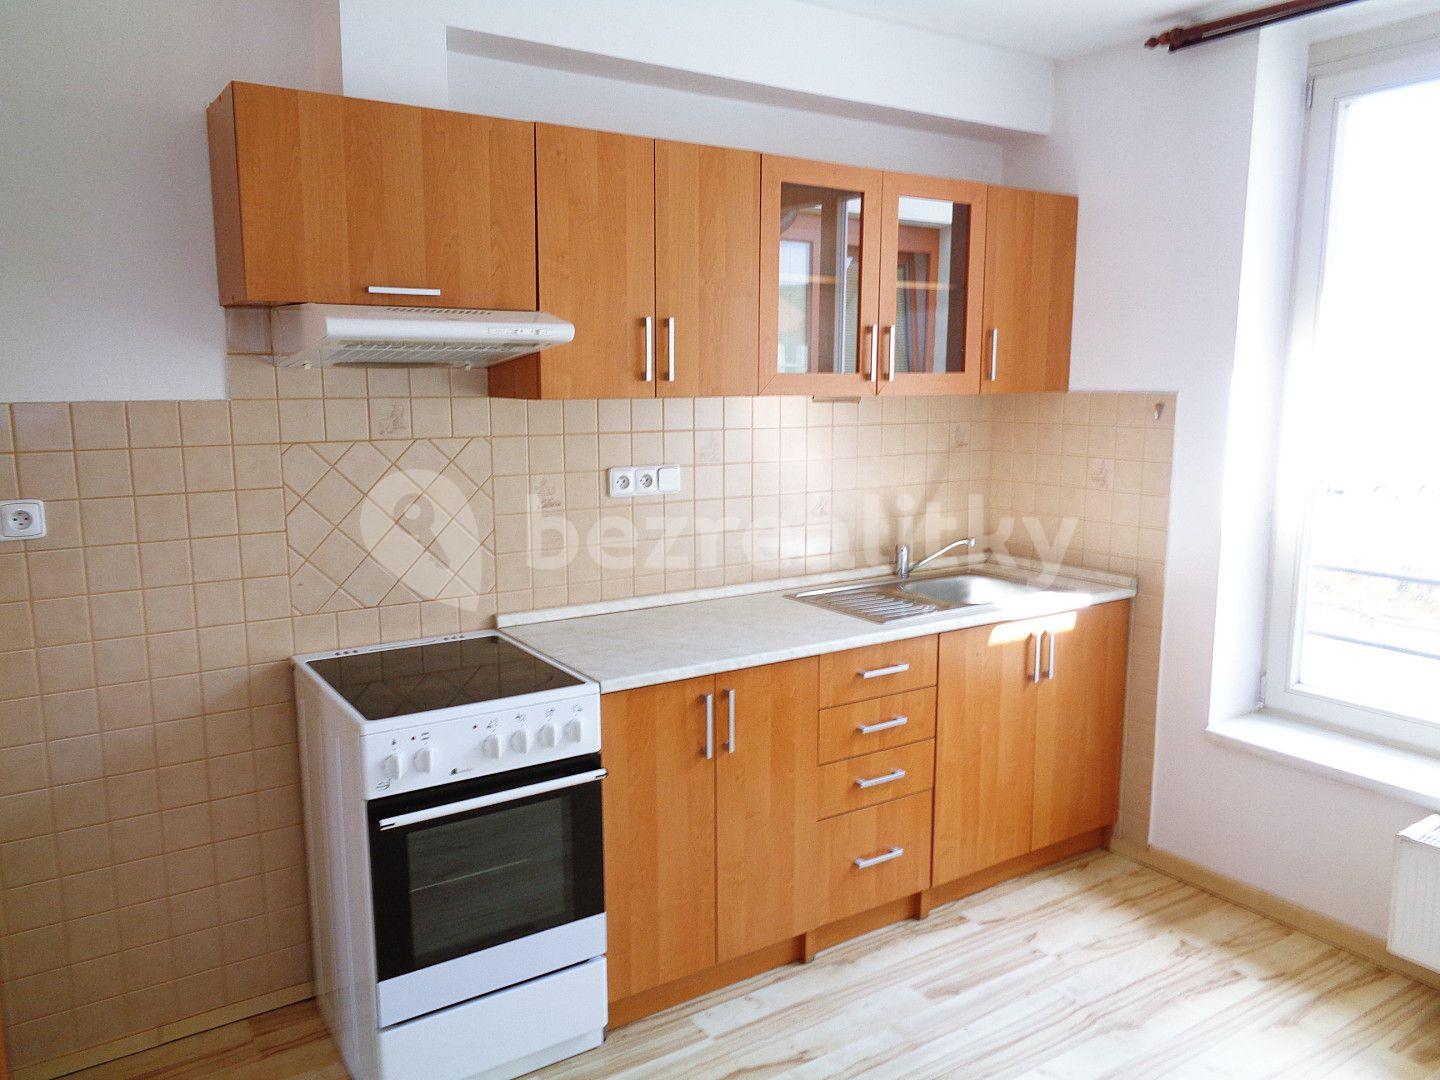 1 bedroom with open-plan kitchen flat for sale, 40 m², Mokrého, Vodňany, Jihočeský Region